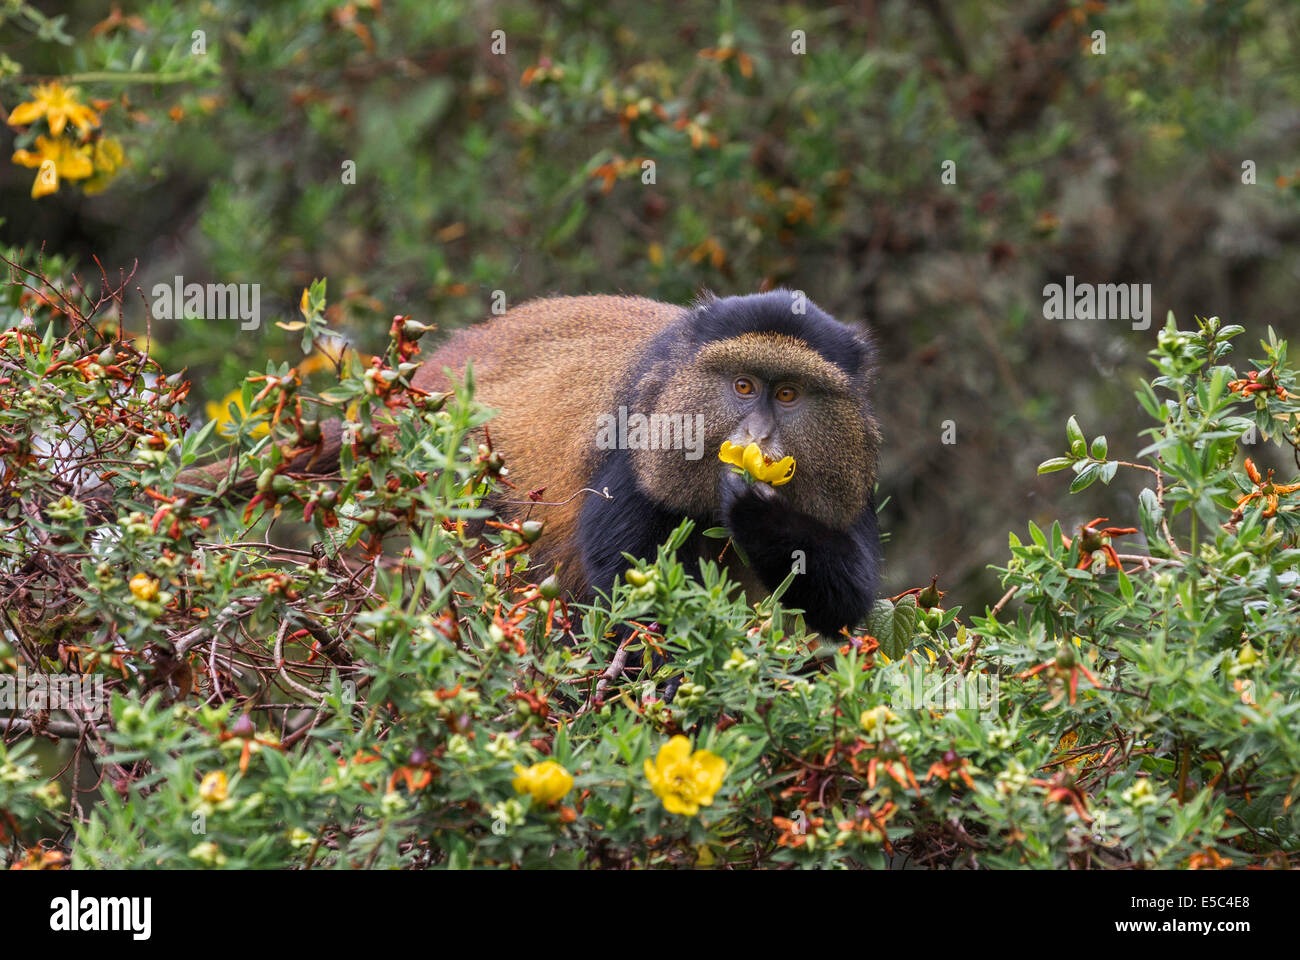 Golden Monkey (Cercopithecus kandti) eating a flower in Mgahinga National Park Uganda. Stock Photo